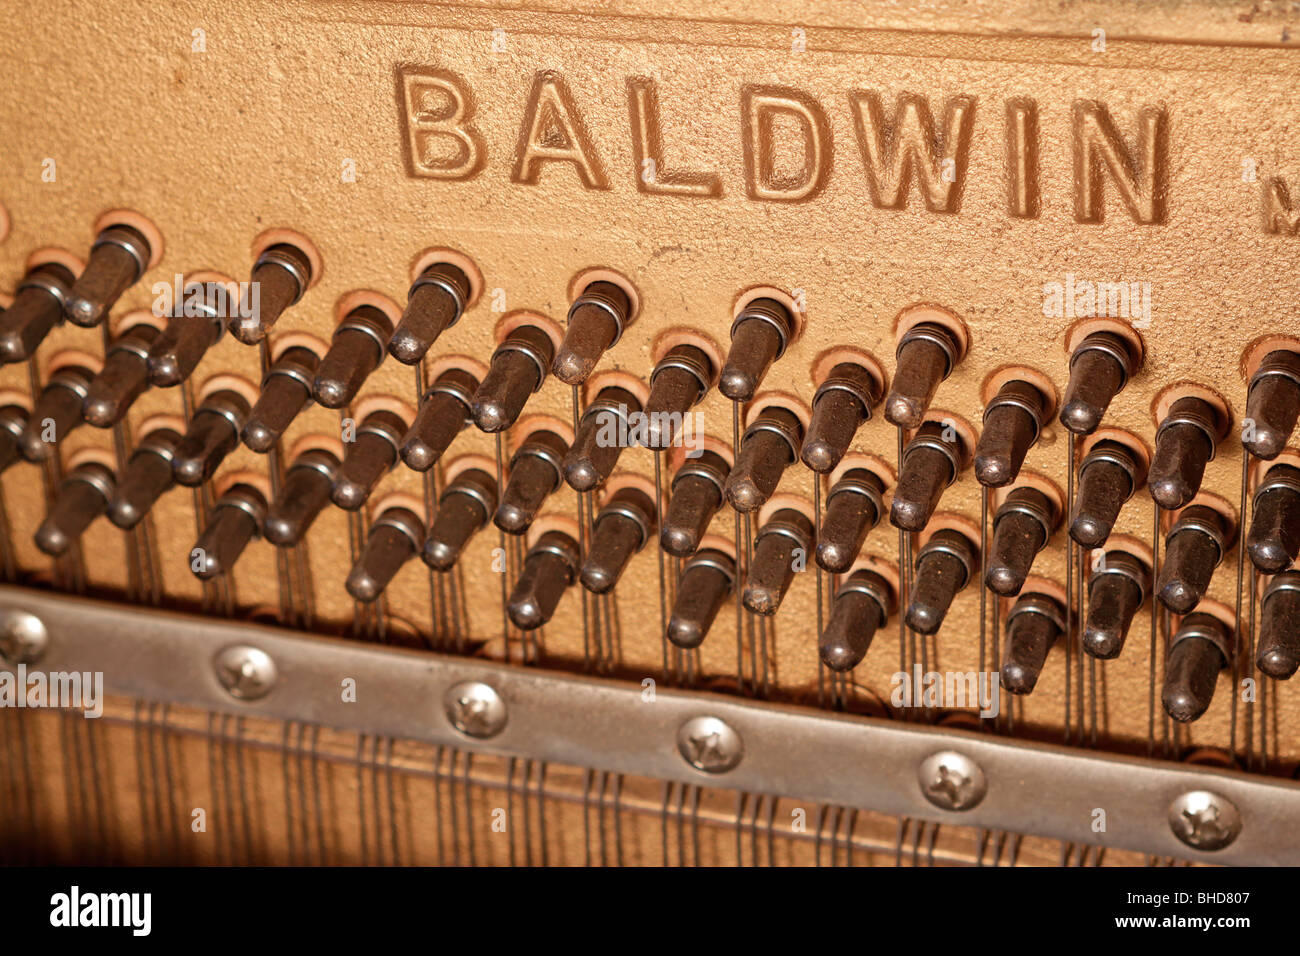 Baldwin Piano Company, cast iron piano harp Stock Photo